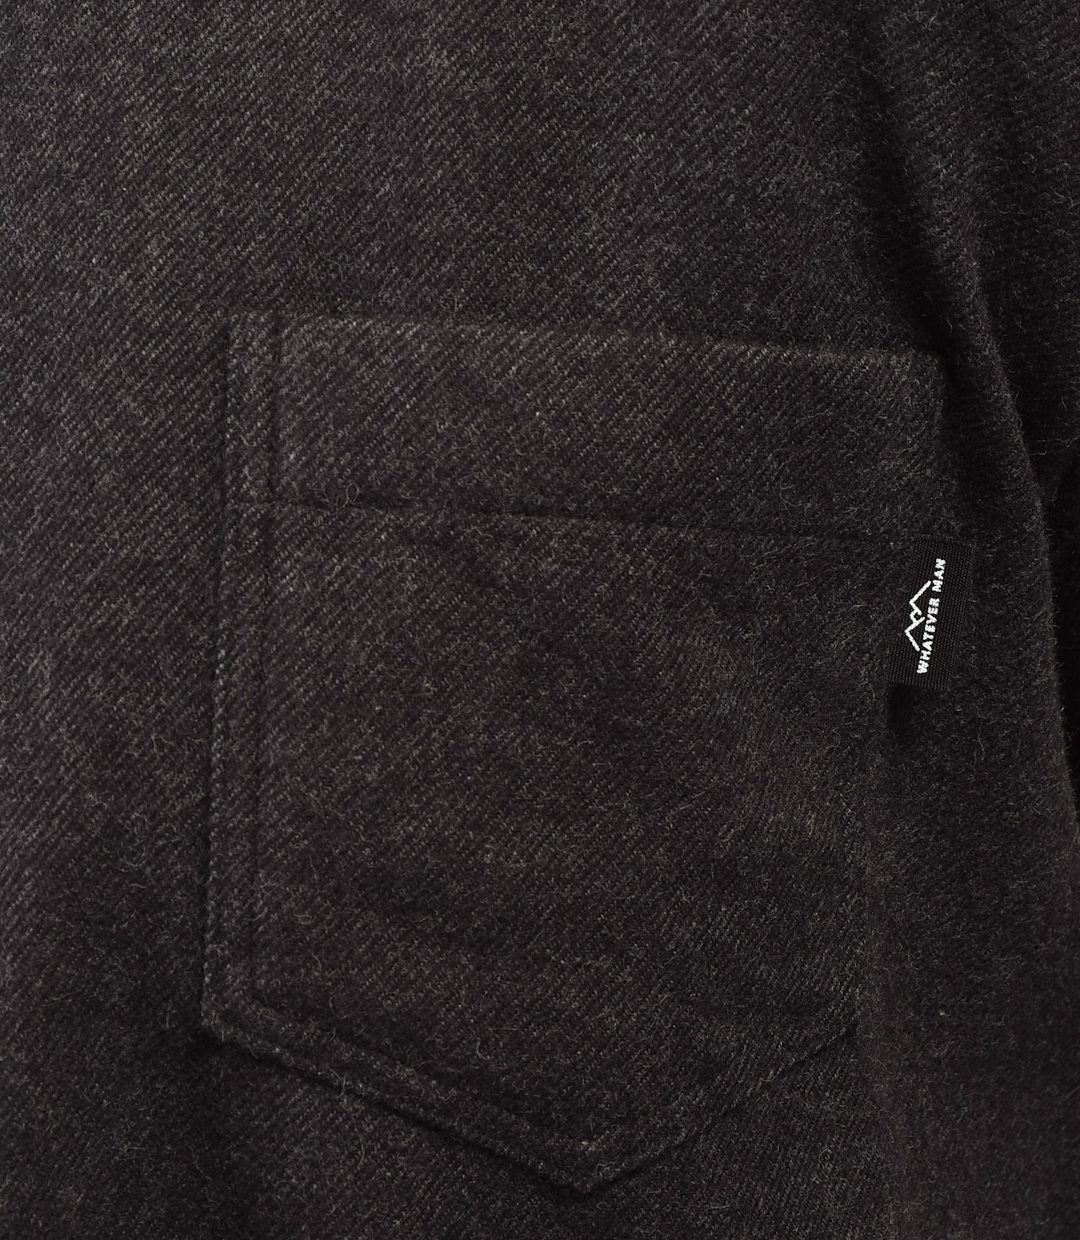 Whatever Man Men Aspen Flannel Black Detail 1